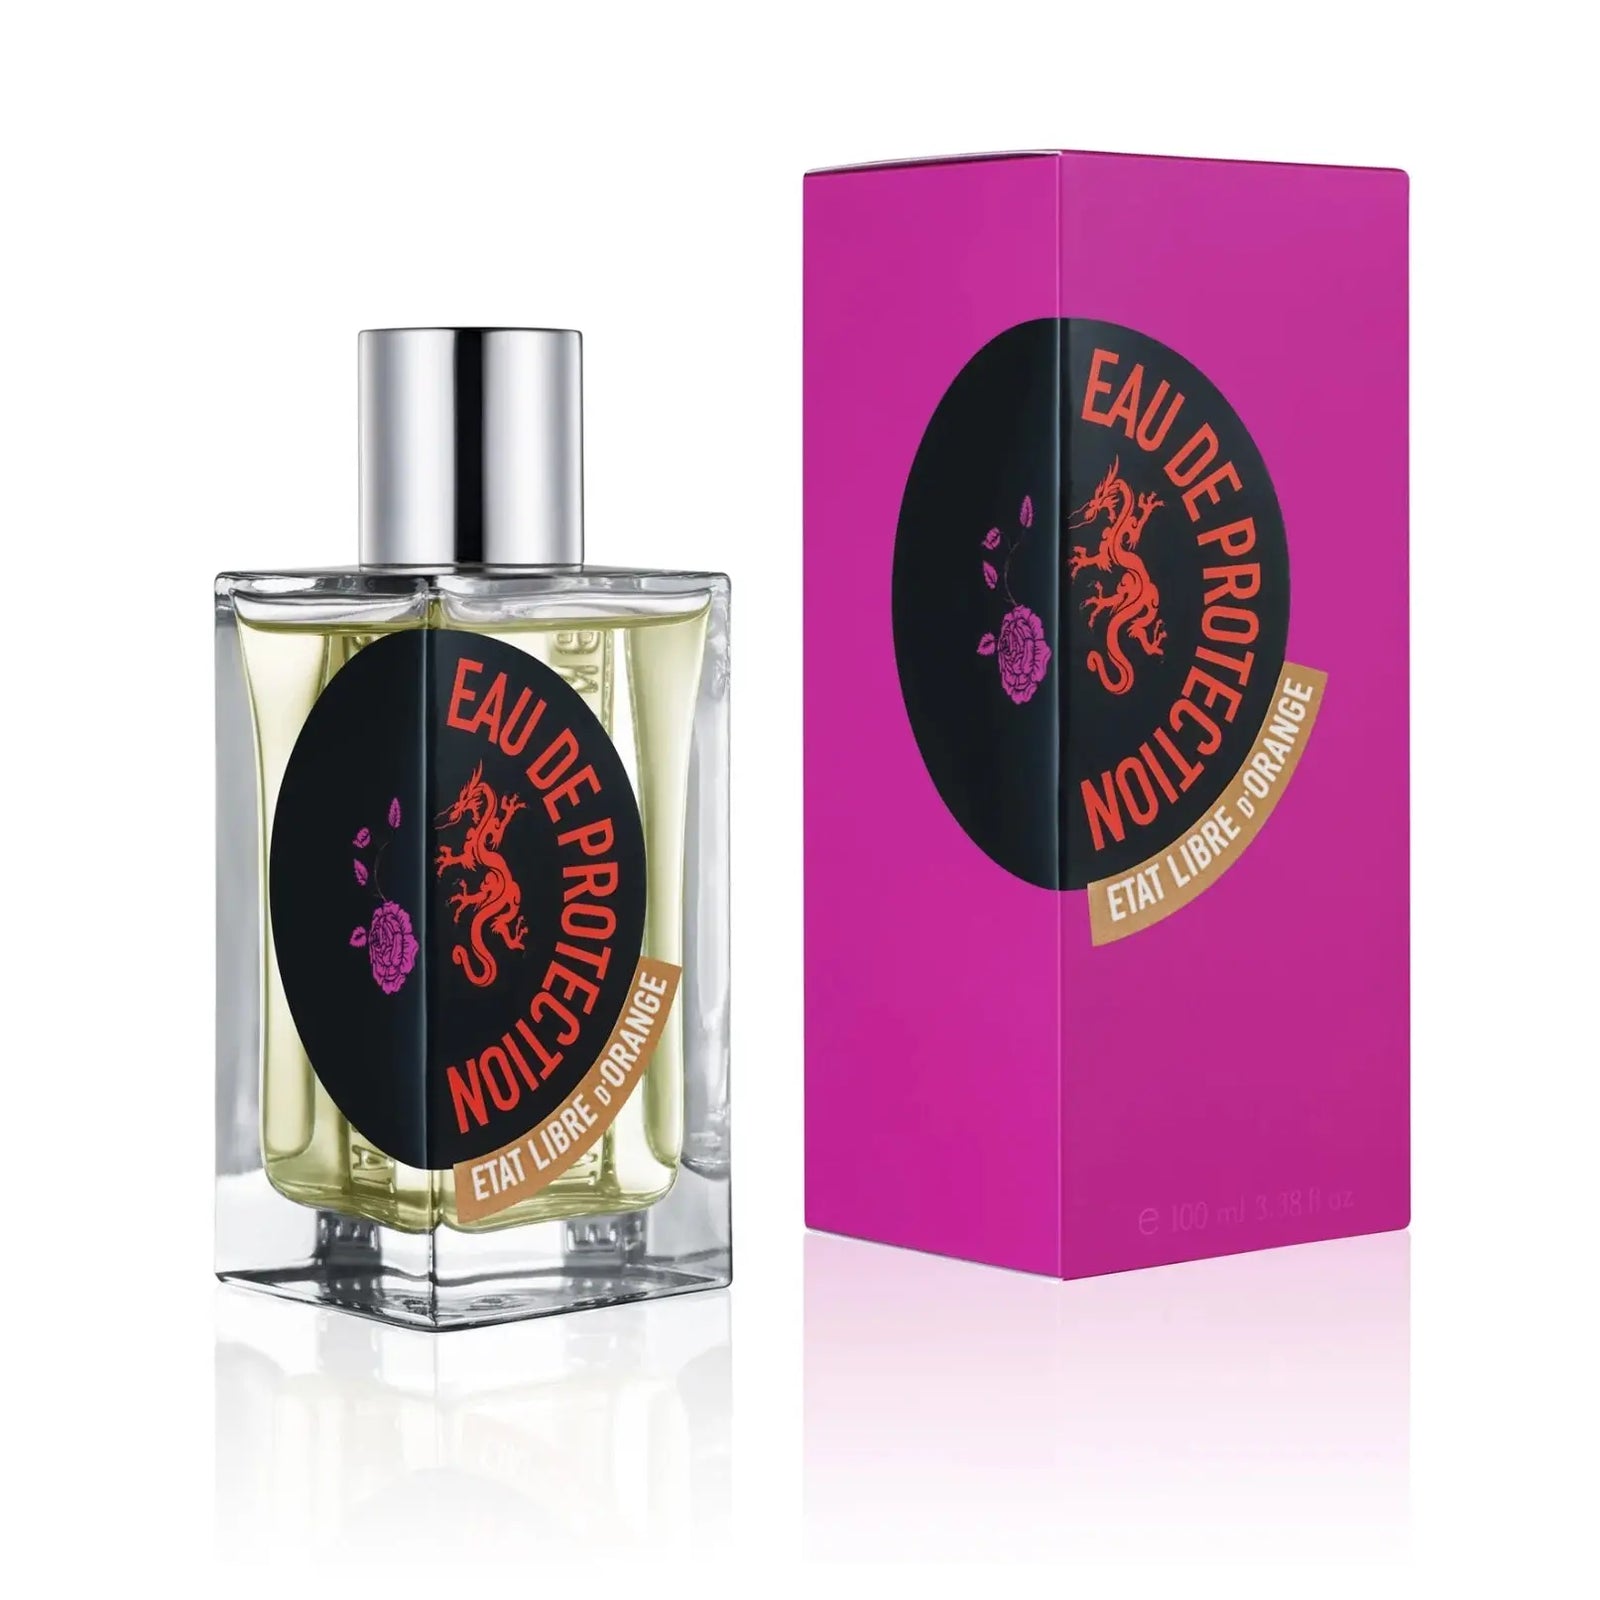 Etat Libre d'Orange Eau de Protection For Women 100ml Imported Perfumes & Beauty Store